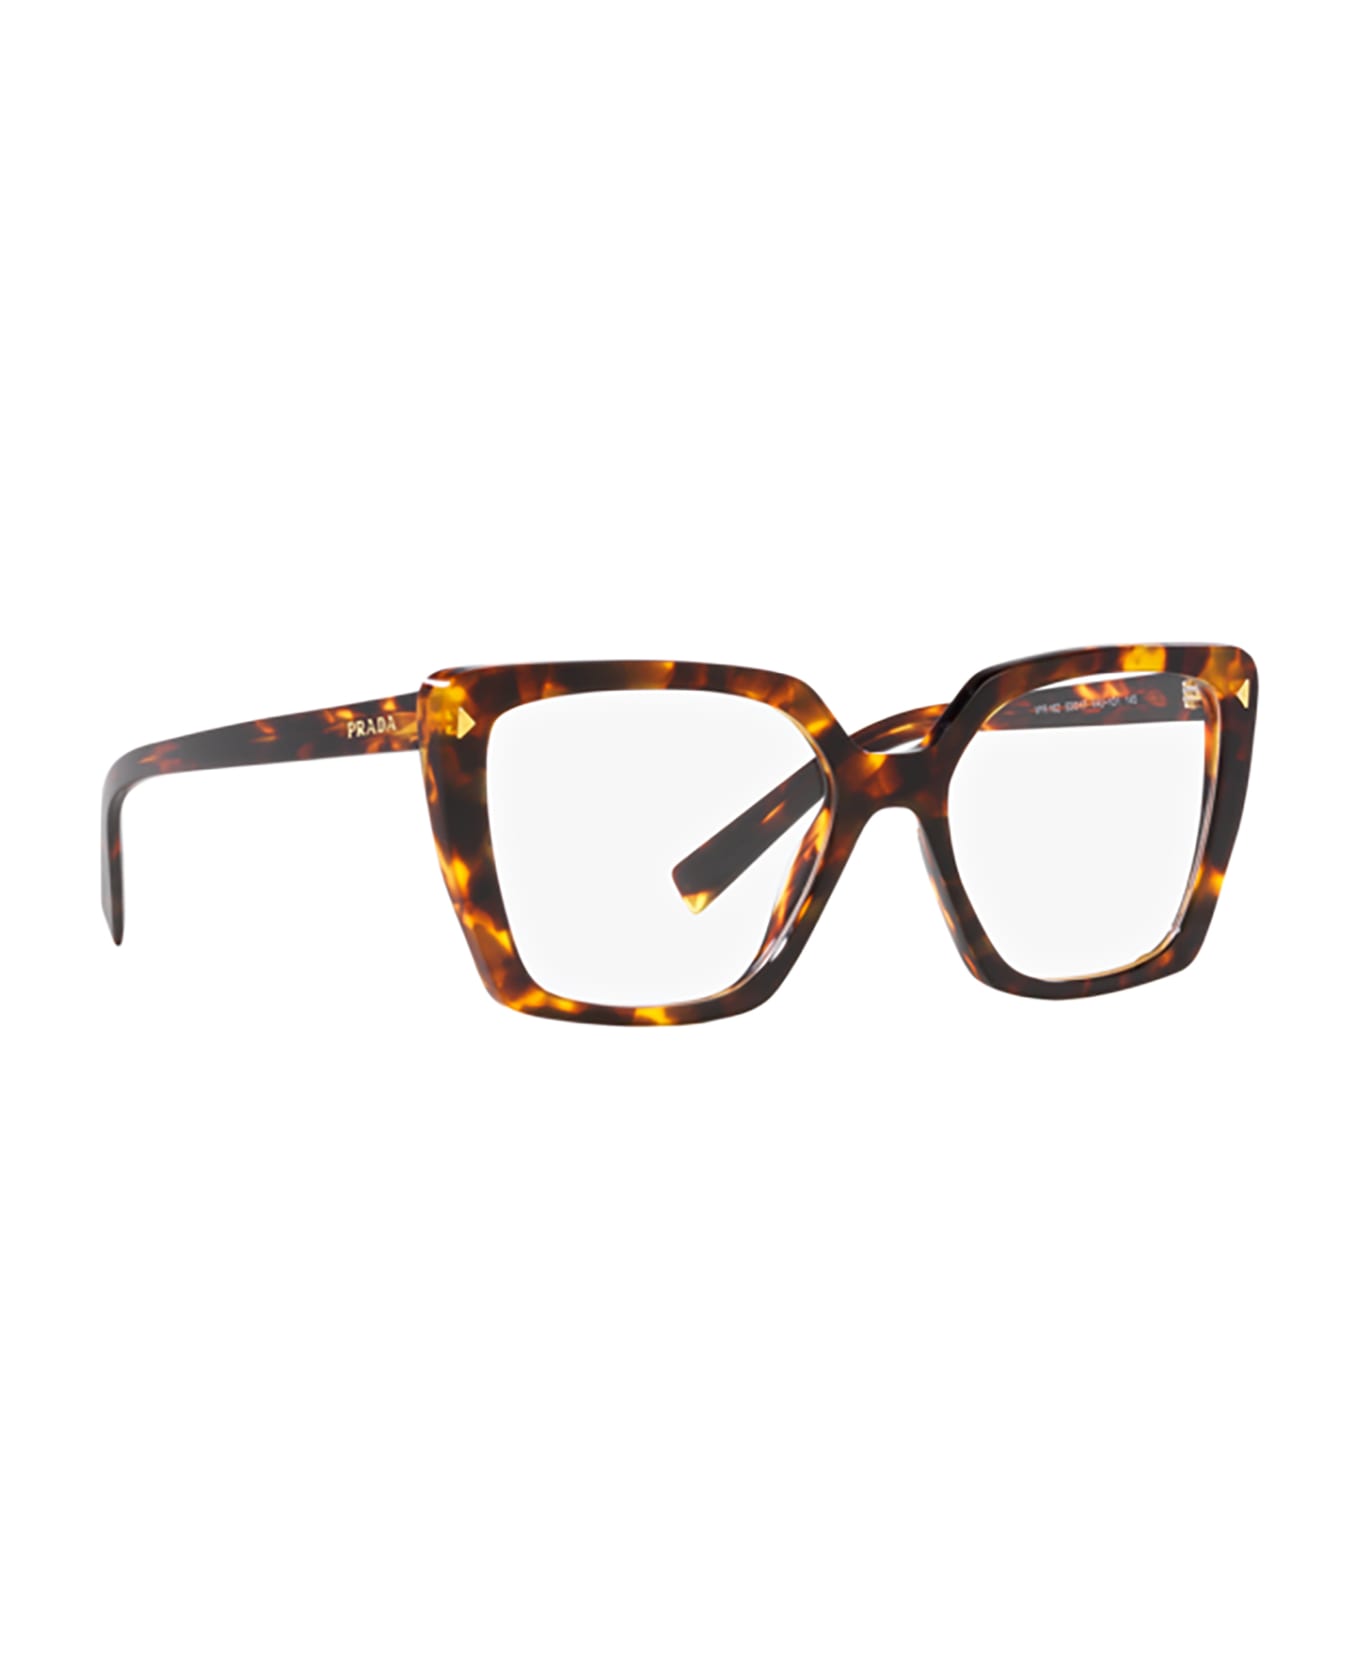 Prada Eyewear Pr 16zv Havana Glasses - Havana